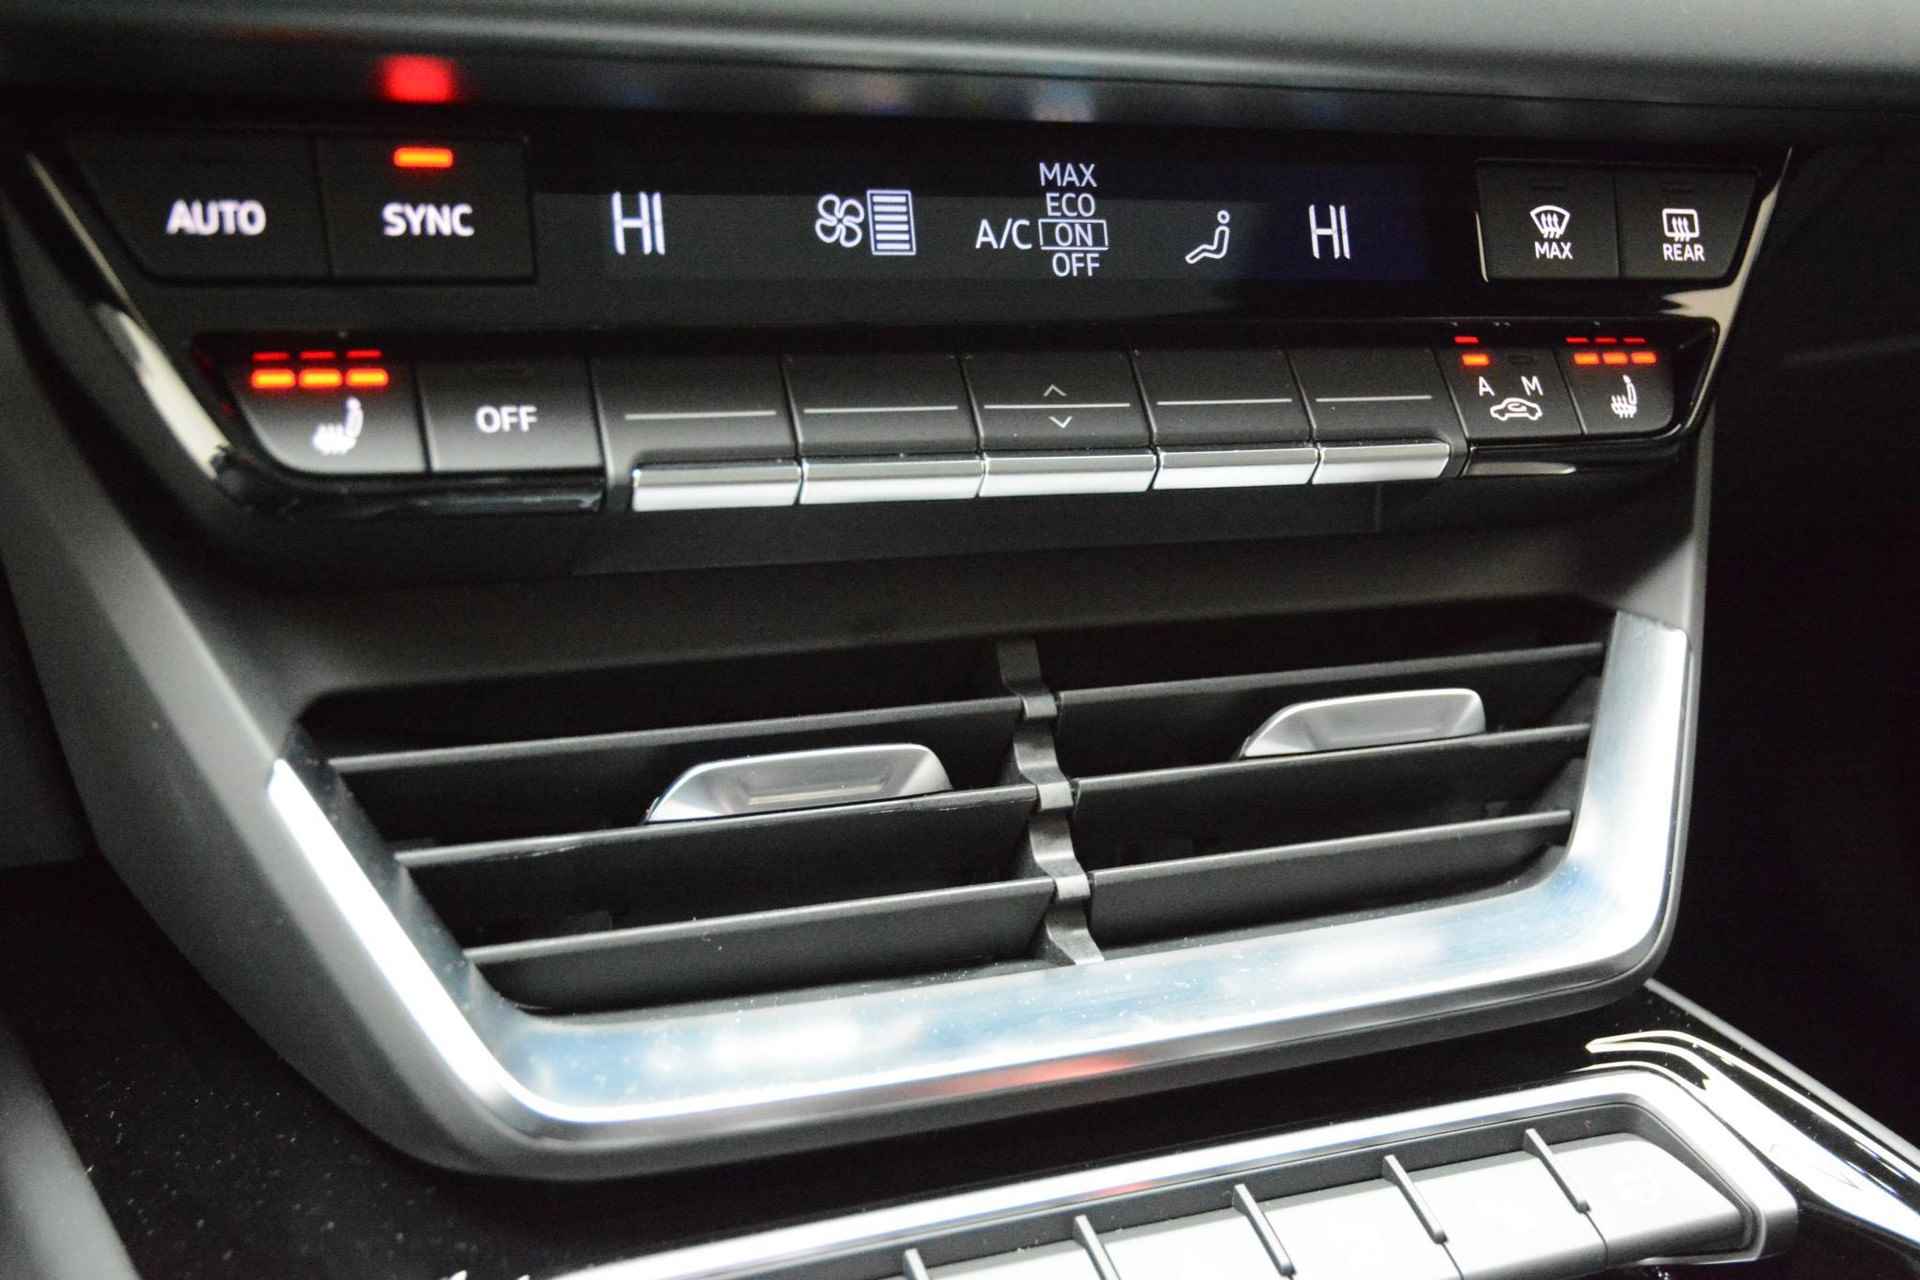 Audi e-tron GT GT Competition 93 kWh 476 PK | Nieuw | NU VAN € 143.900,00 VOOR € 123.900,00!!!! | UNIEKE KLEUR TIEFGRUN ENIGE IN NL!!! | Navigatie | Maxtrix-Laser koplampen | 360 camera | Autonome parkeerfunctie | Dynamische vierwielbesturing | Dodehoek detectie | Glazen panoramadak | Head-up display | Dynamiekpakket plus | Audi virtual cockpit plus | Stoelverwarming voor en achter | Lichtpakket plus ambient light | Optiekpakket zwart plus - 17/30